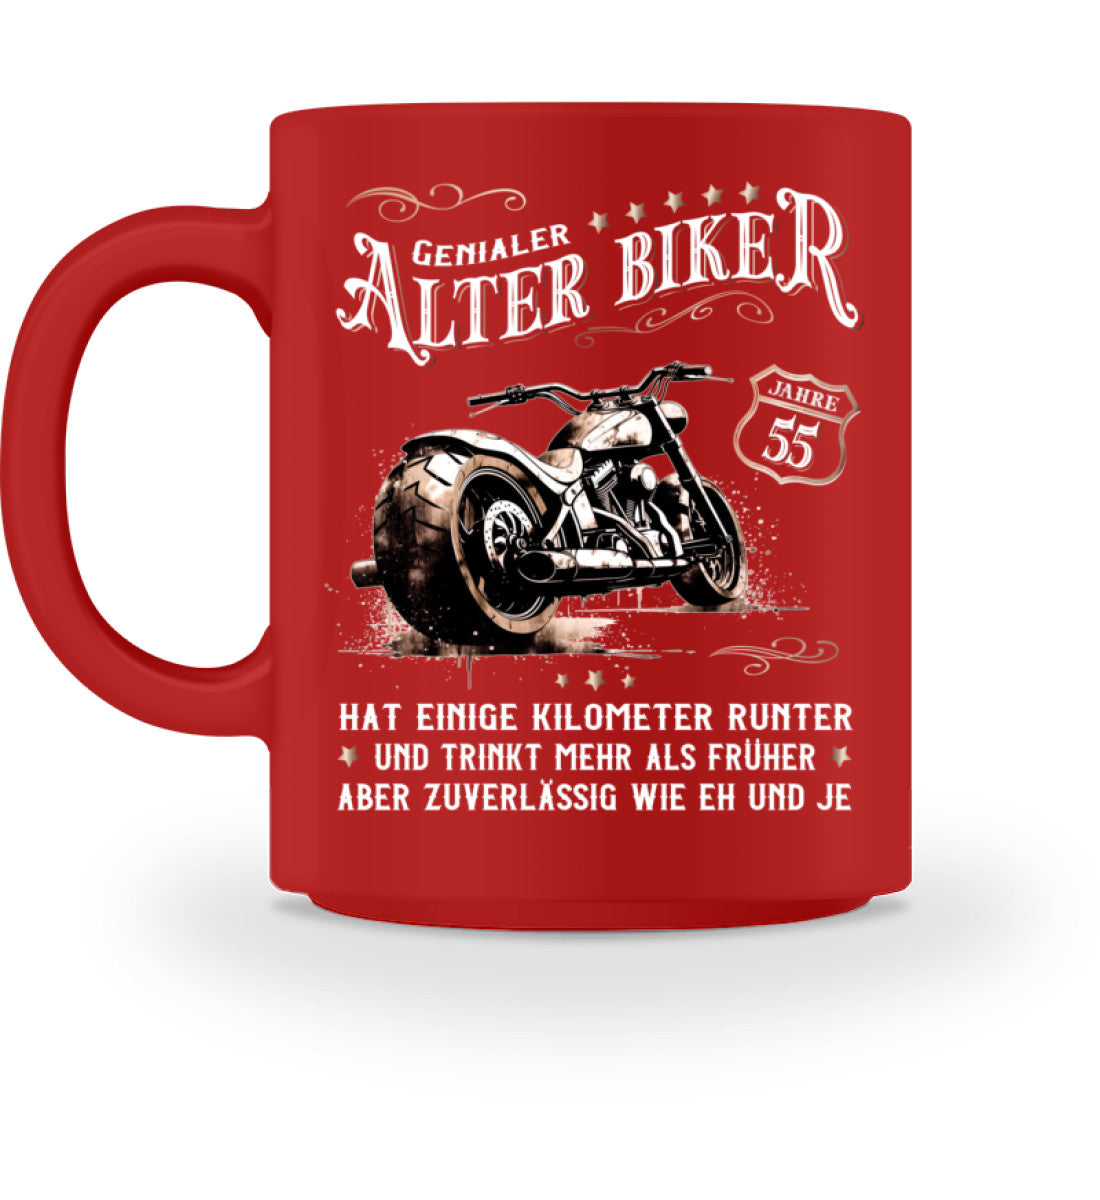 Eine Biker  Geburtstags-Tasse für Motorradfahrer, von Wingbikers, mit dem beidseitigen Aufdruck, Alter Biker - 55 Jahre - Einige Kilometer runter, trinkt mehr - aber zuverlässig wie eh und je, in rot.